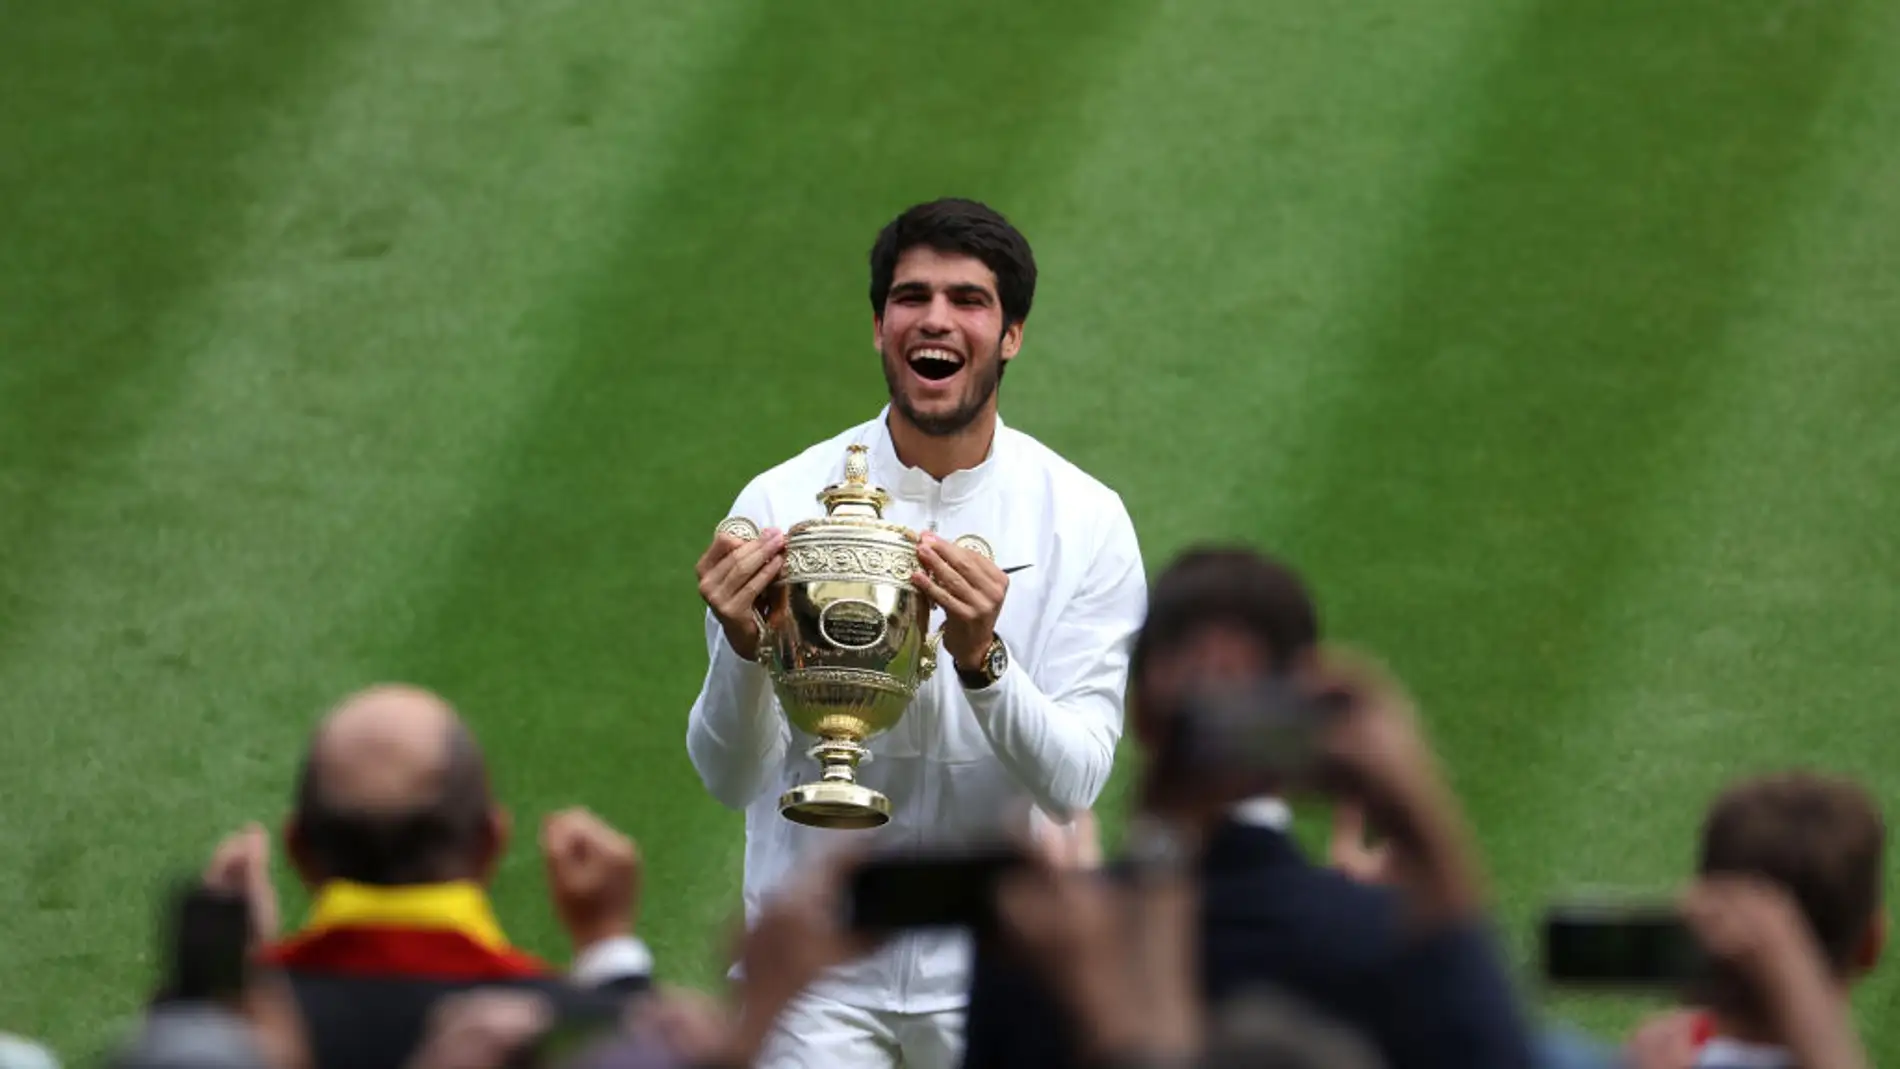 Alcaraz recibe emotivas felicitaciones tras su triunfo histórico en Wimbledon